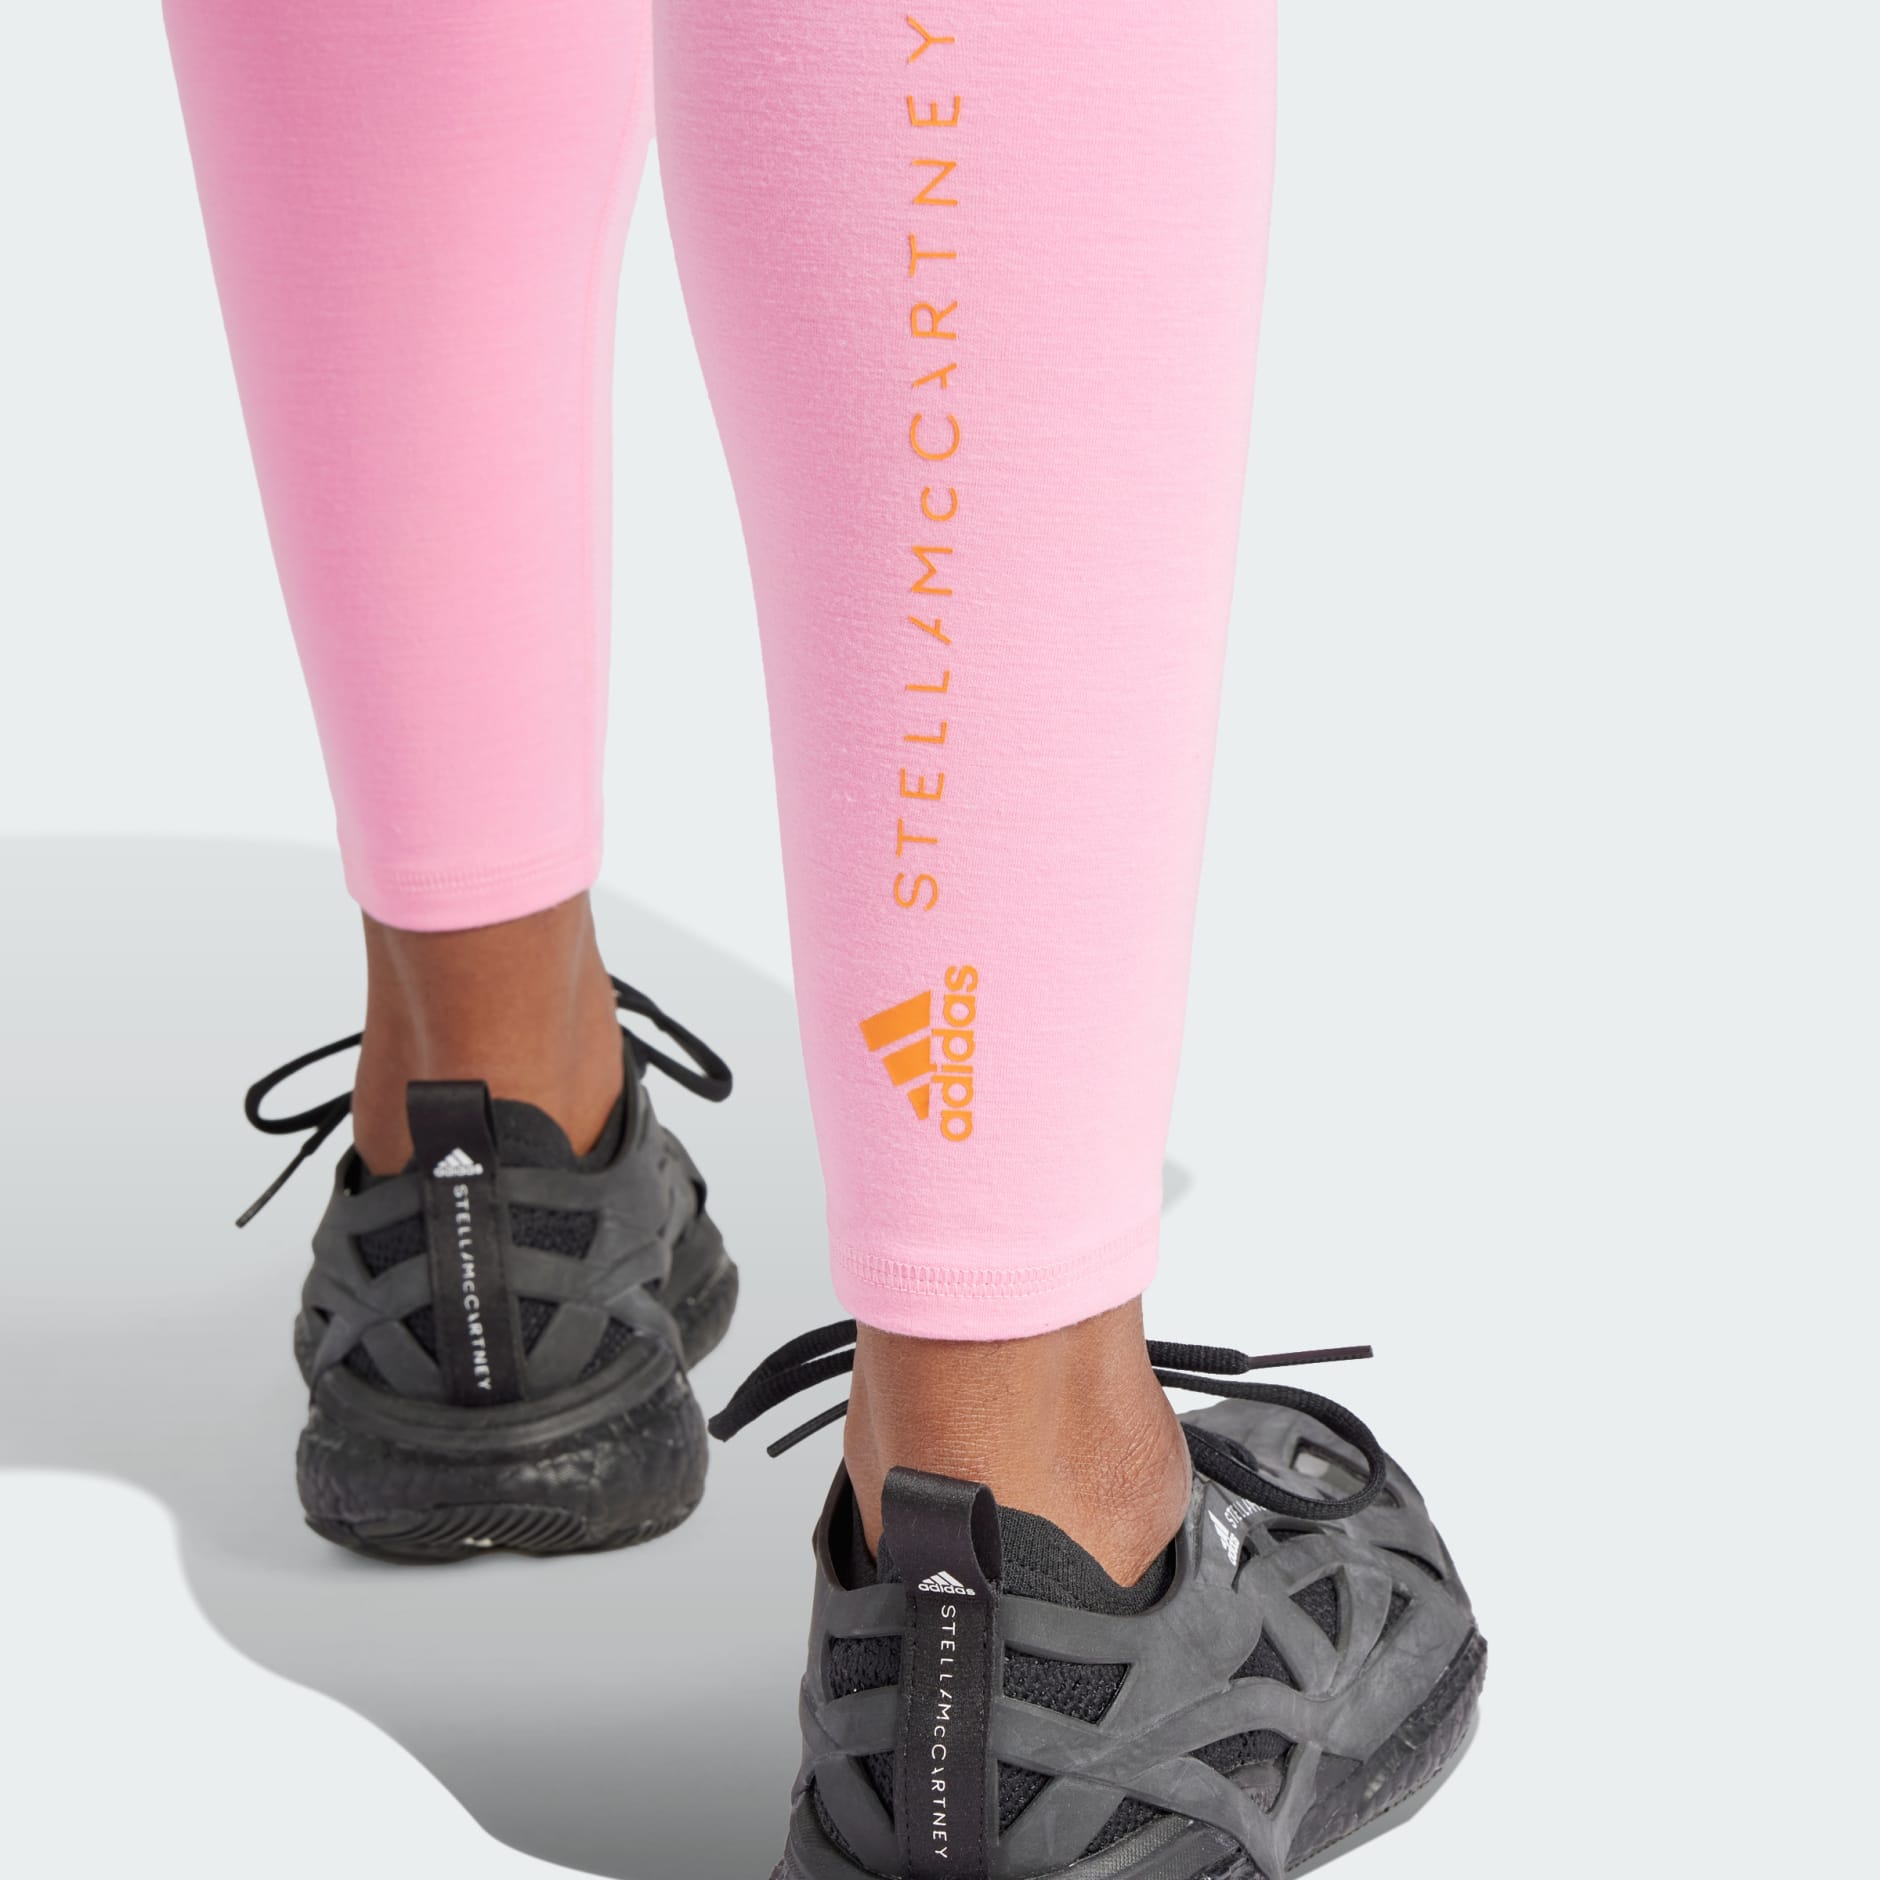 Yoga compression tights, adidas by Stella McCartney